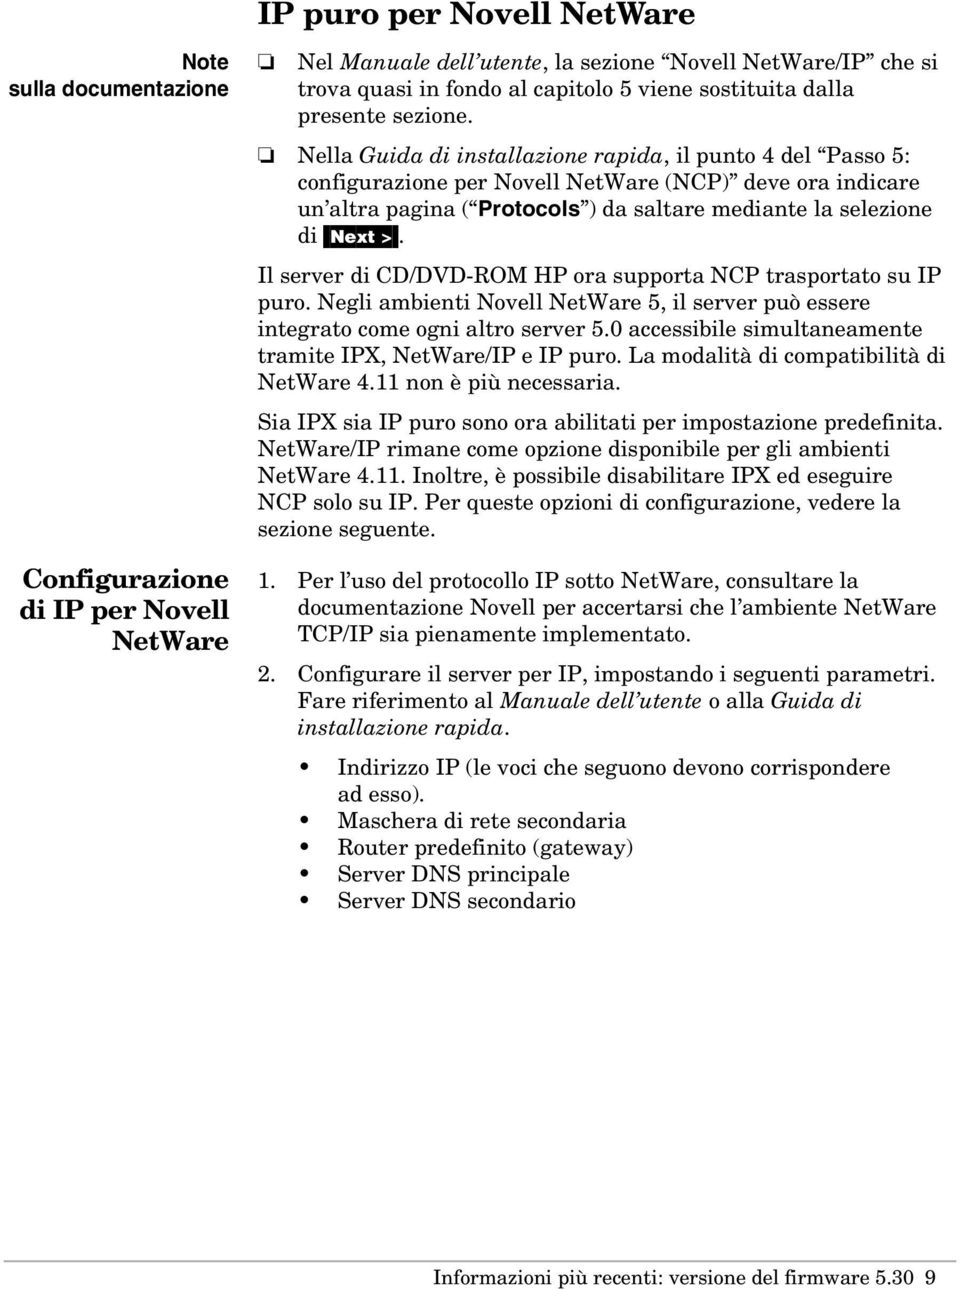 Nella Guida di installazione rapida, il punto 4 del Passo 5: configurazione per Novell NetWare (NCP) deve ora indicare un altra pagina ( Protocols ) da saltare mediante la selezione di [Next >.